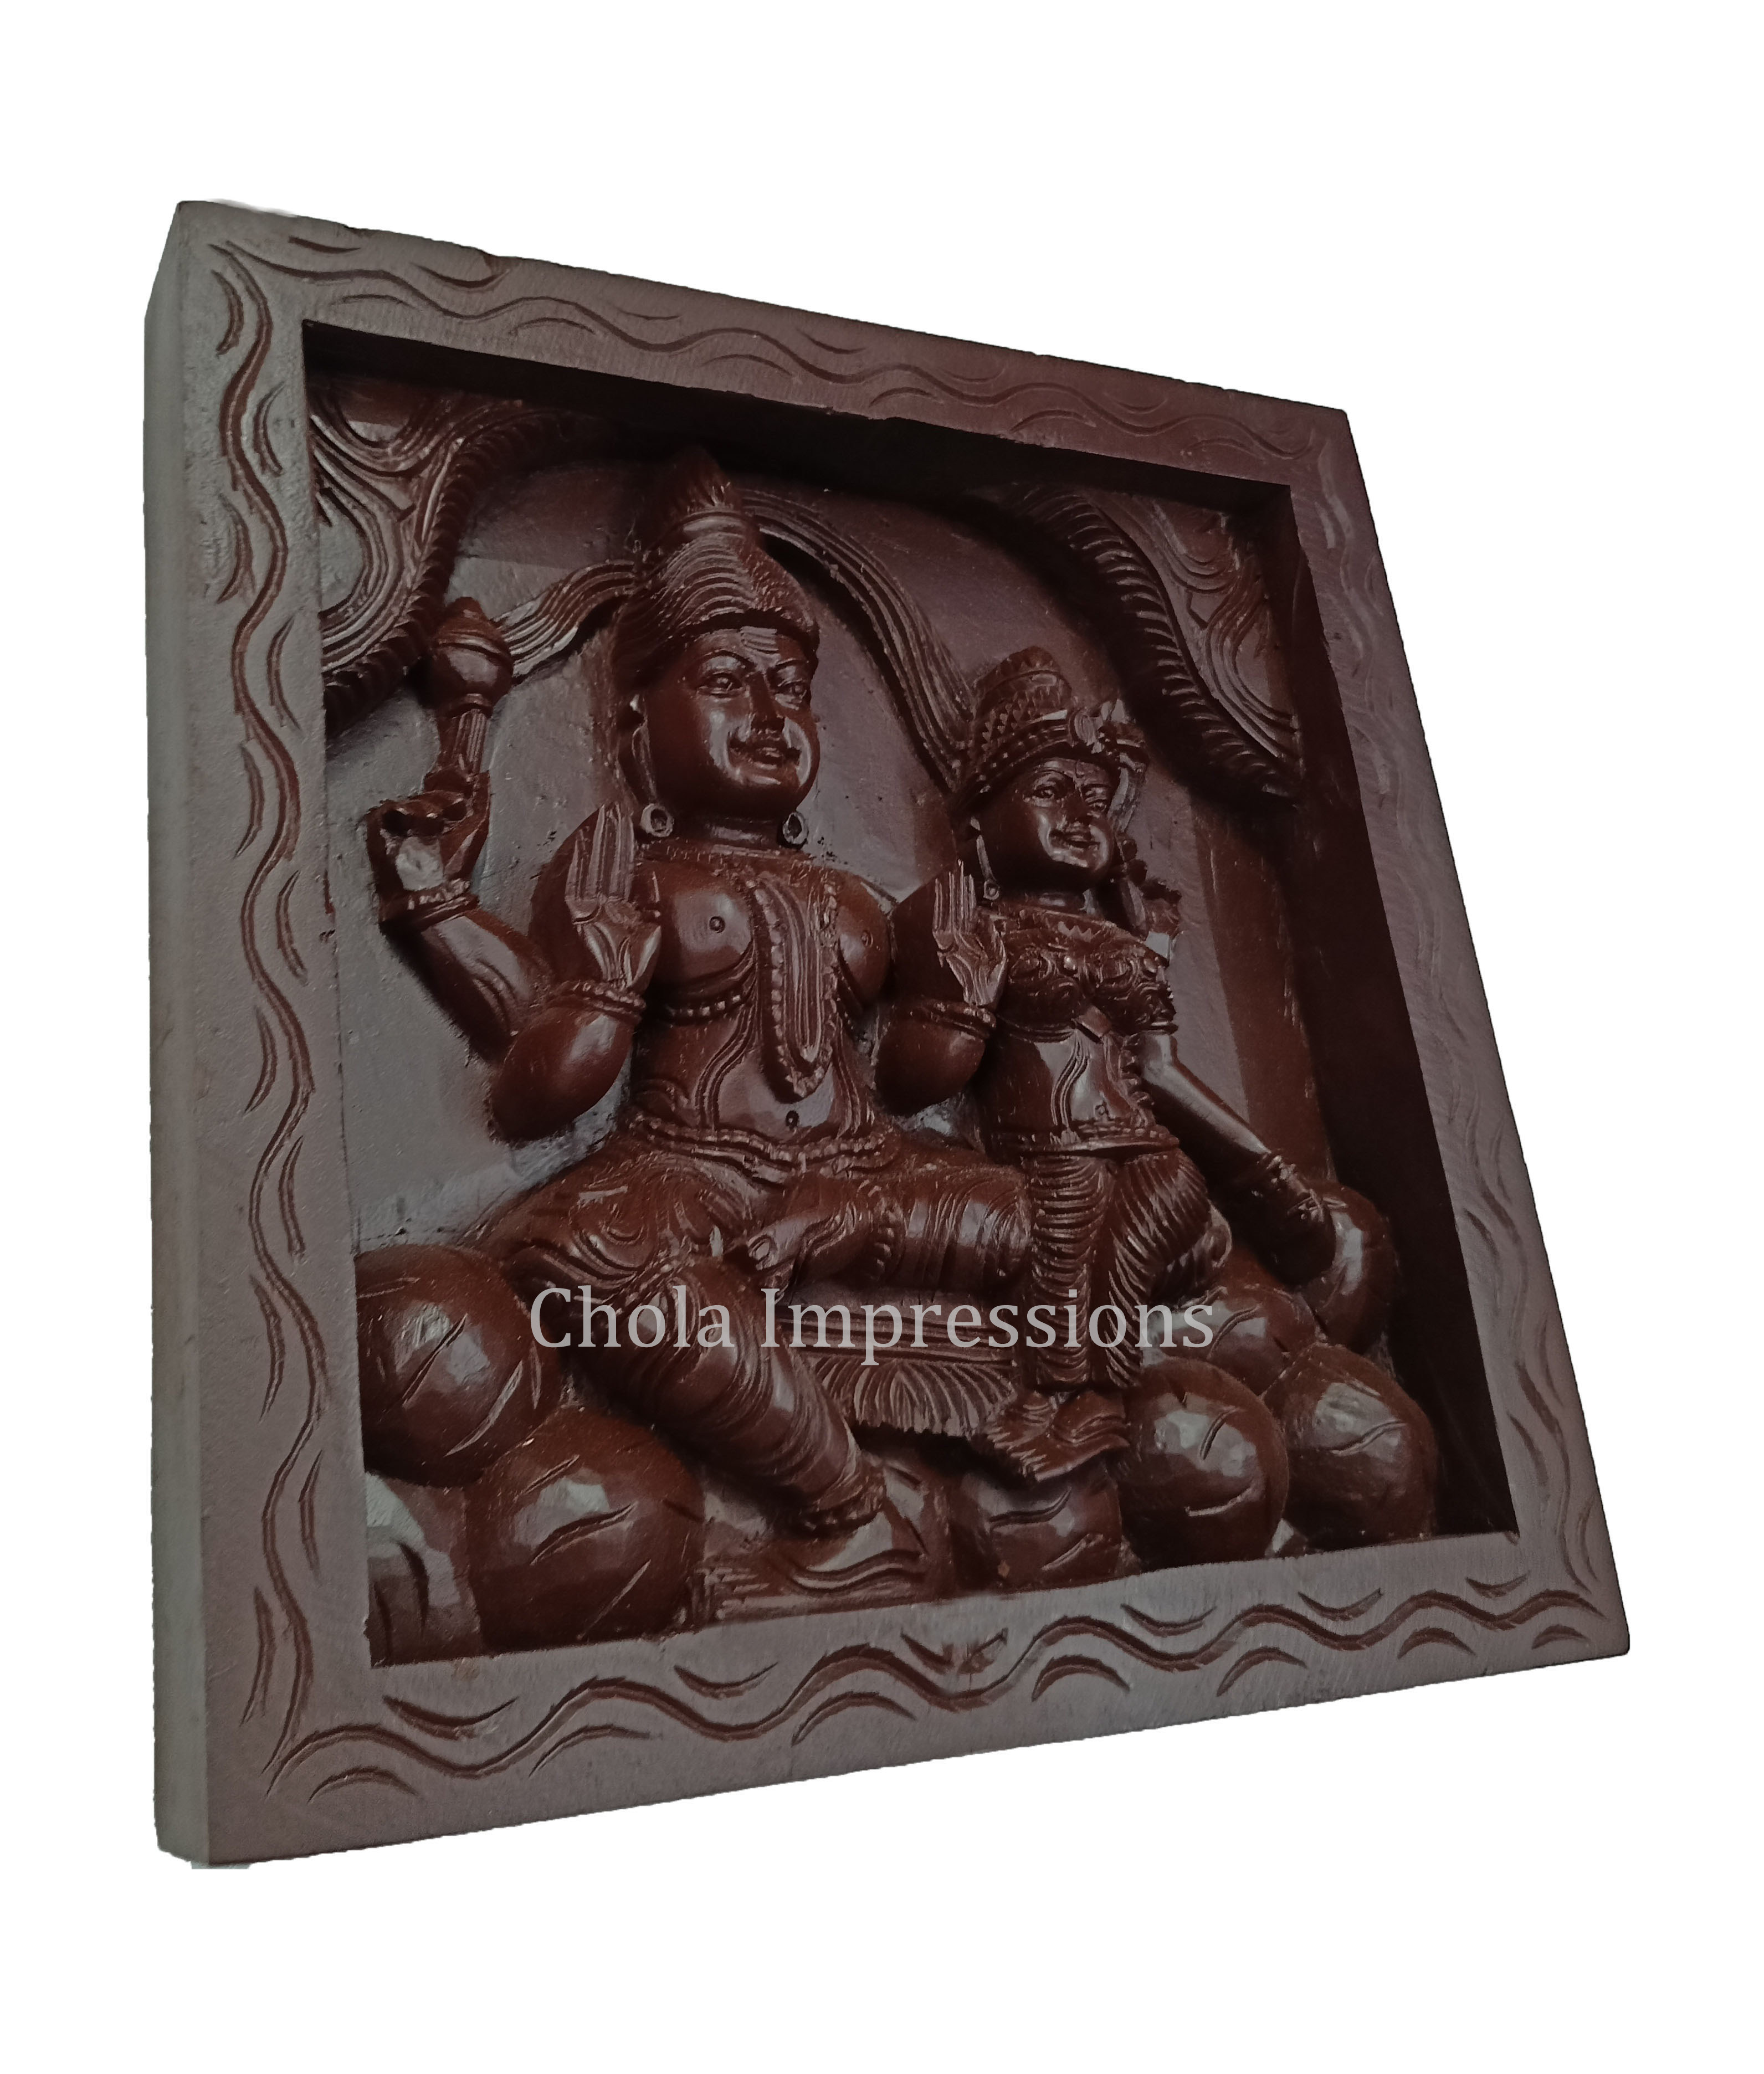 Shiva Parvati on Kailasa - Dark Brown Wooden Wall Mount - 1ft